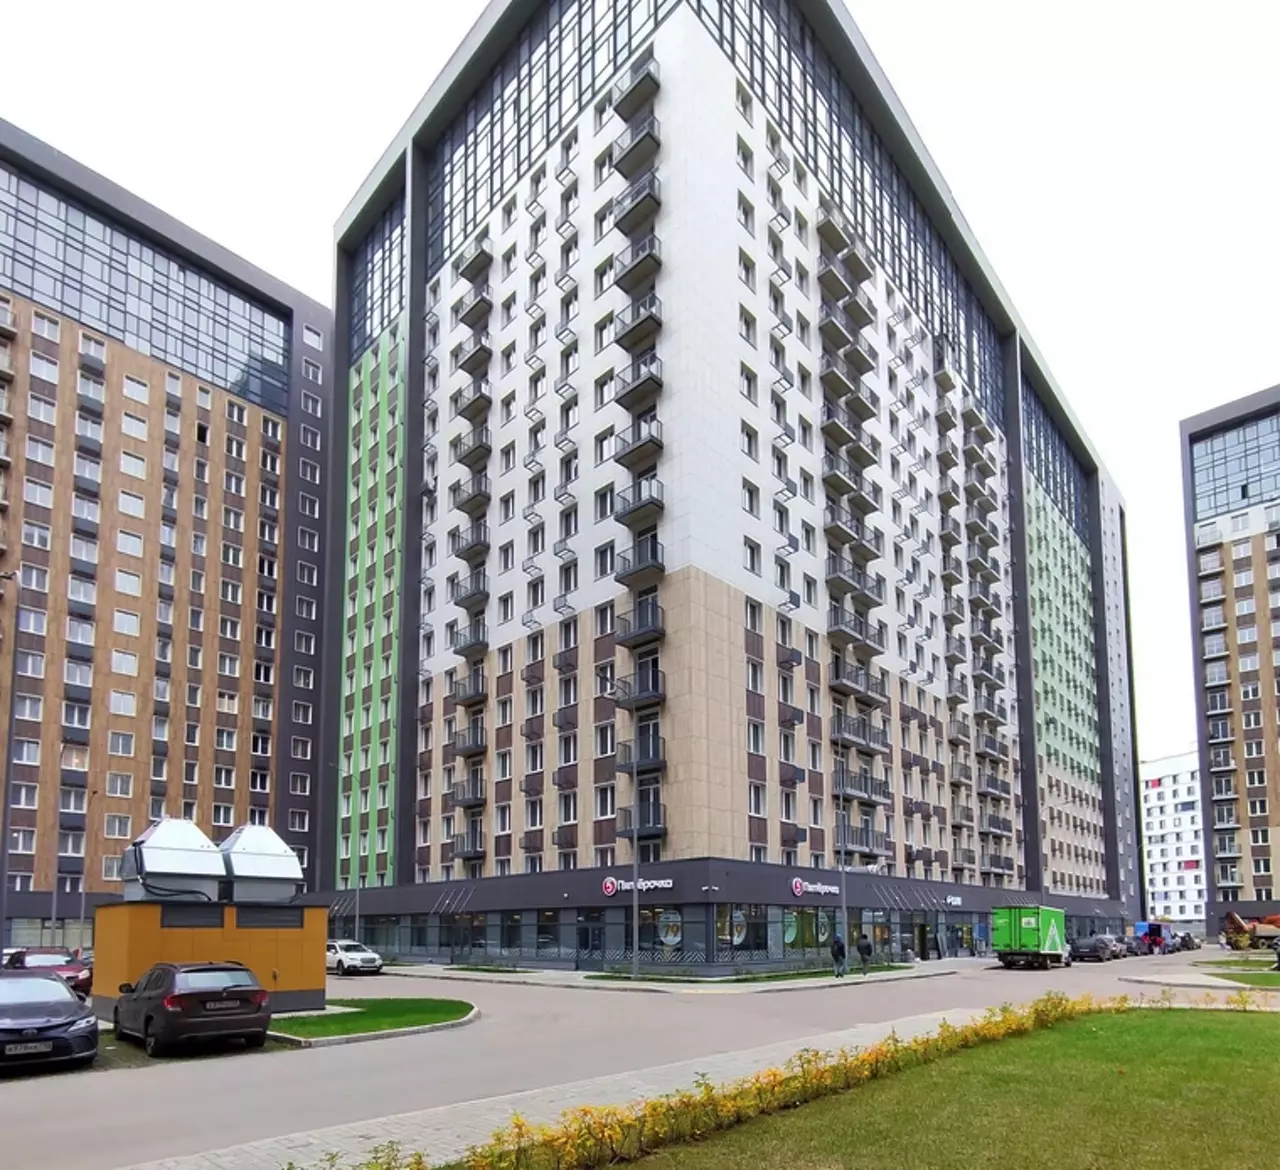 Продам квартиру в Москве по адресу Берёзовая аллея, 19к4, площадь 242 квм Недвижимость Москва (Россия)  Проект включает в себя пять 18-ти этажных жилых домов